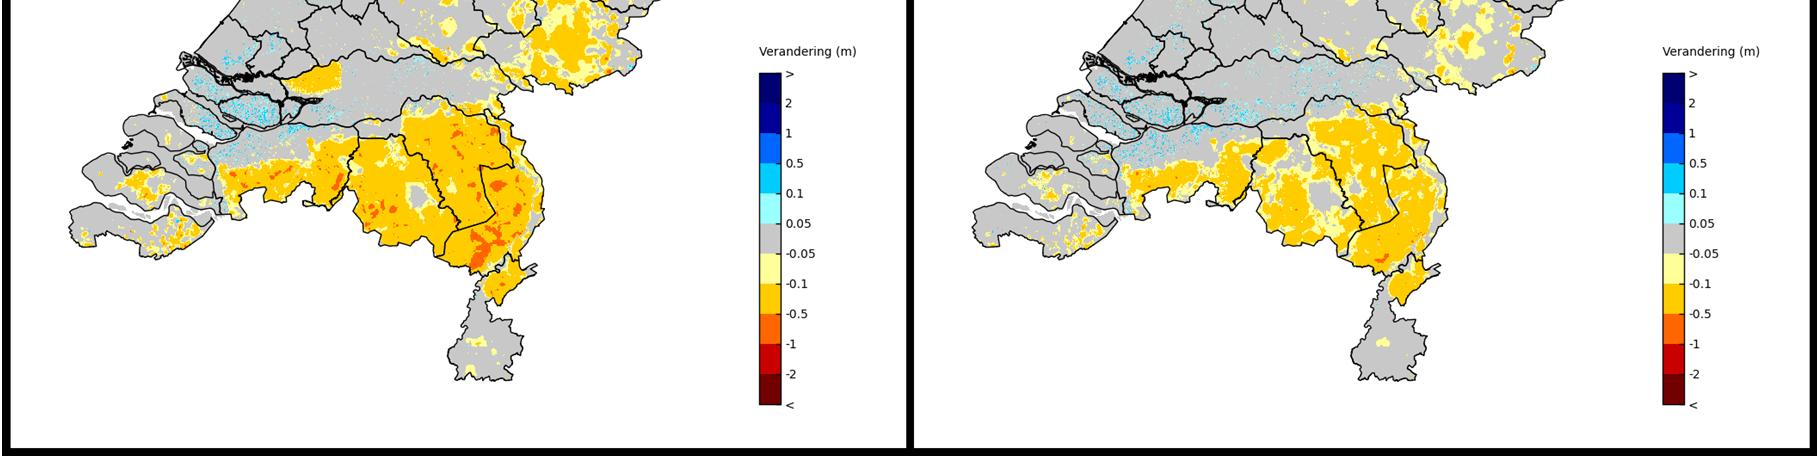 7 Verandering LG3 Warm 2100 met ingrepen en maatregelen voor een extreem droog jaar (links) en een droog jaar (rechts).